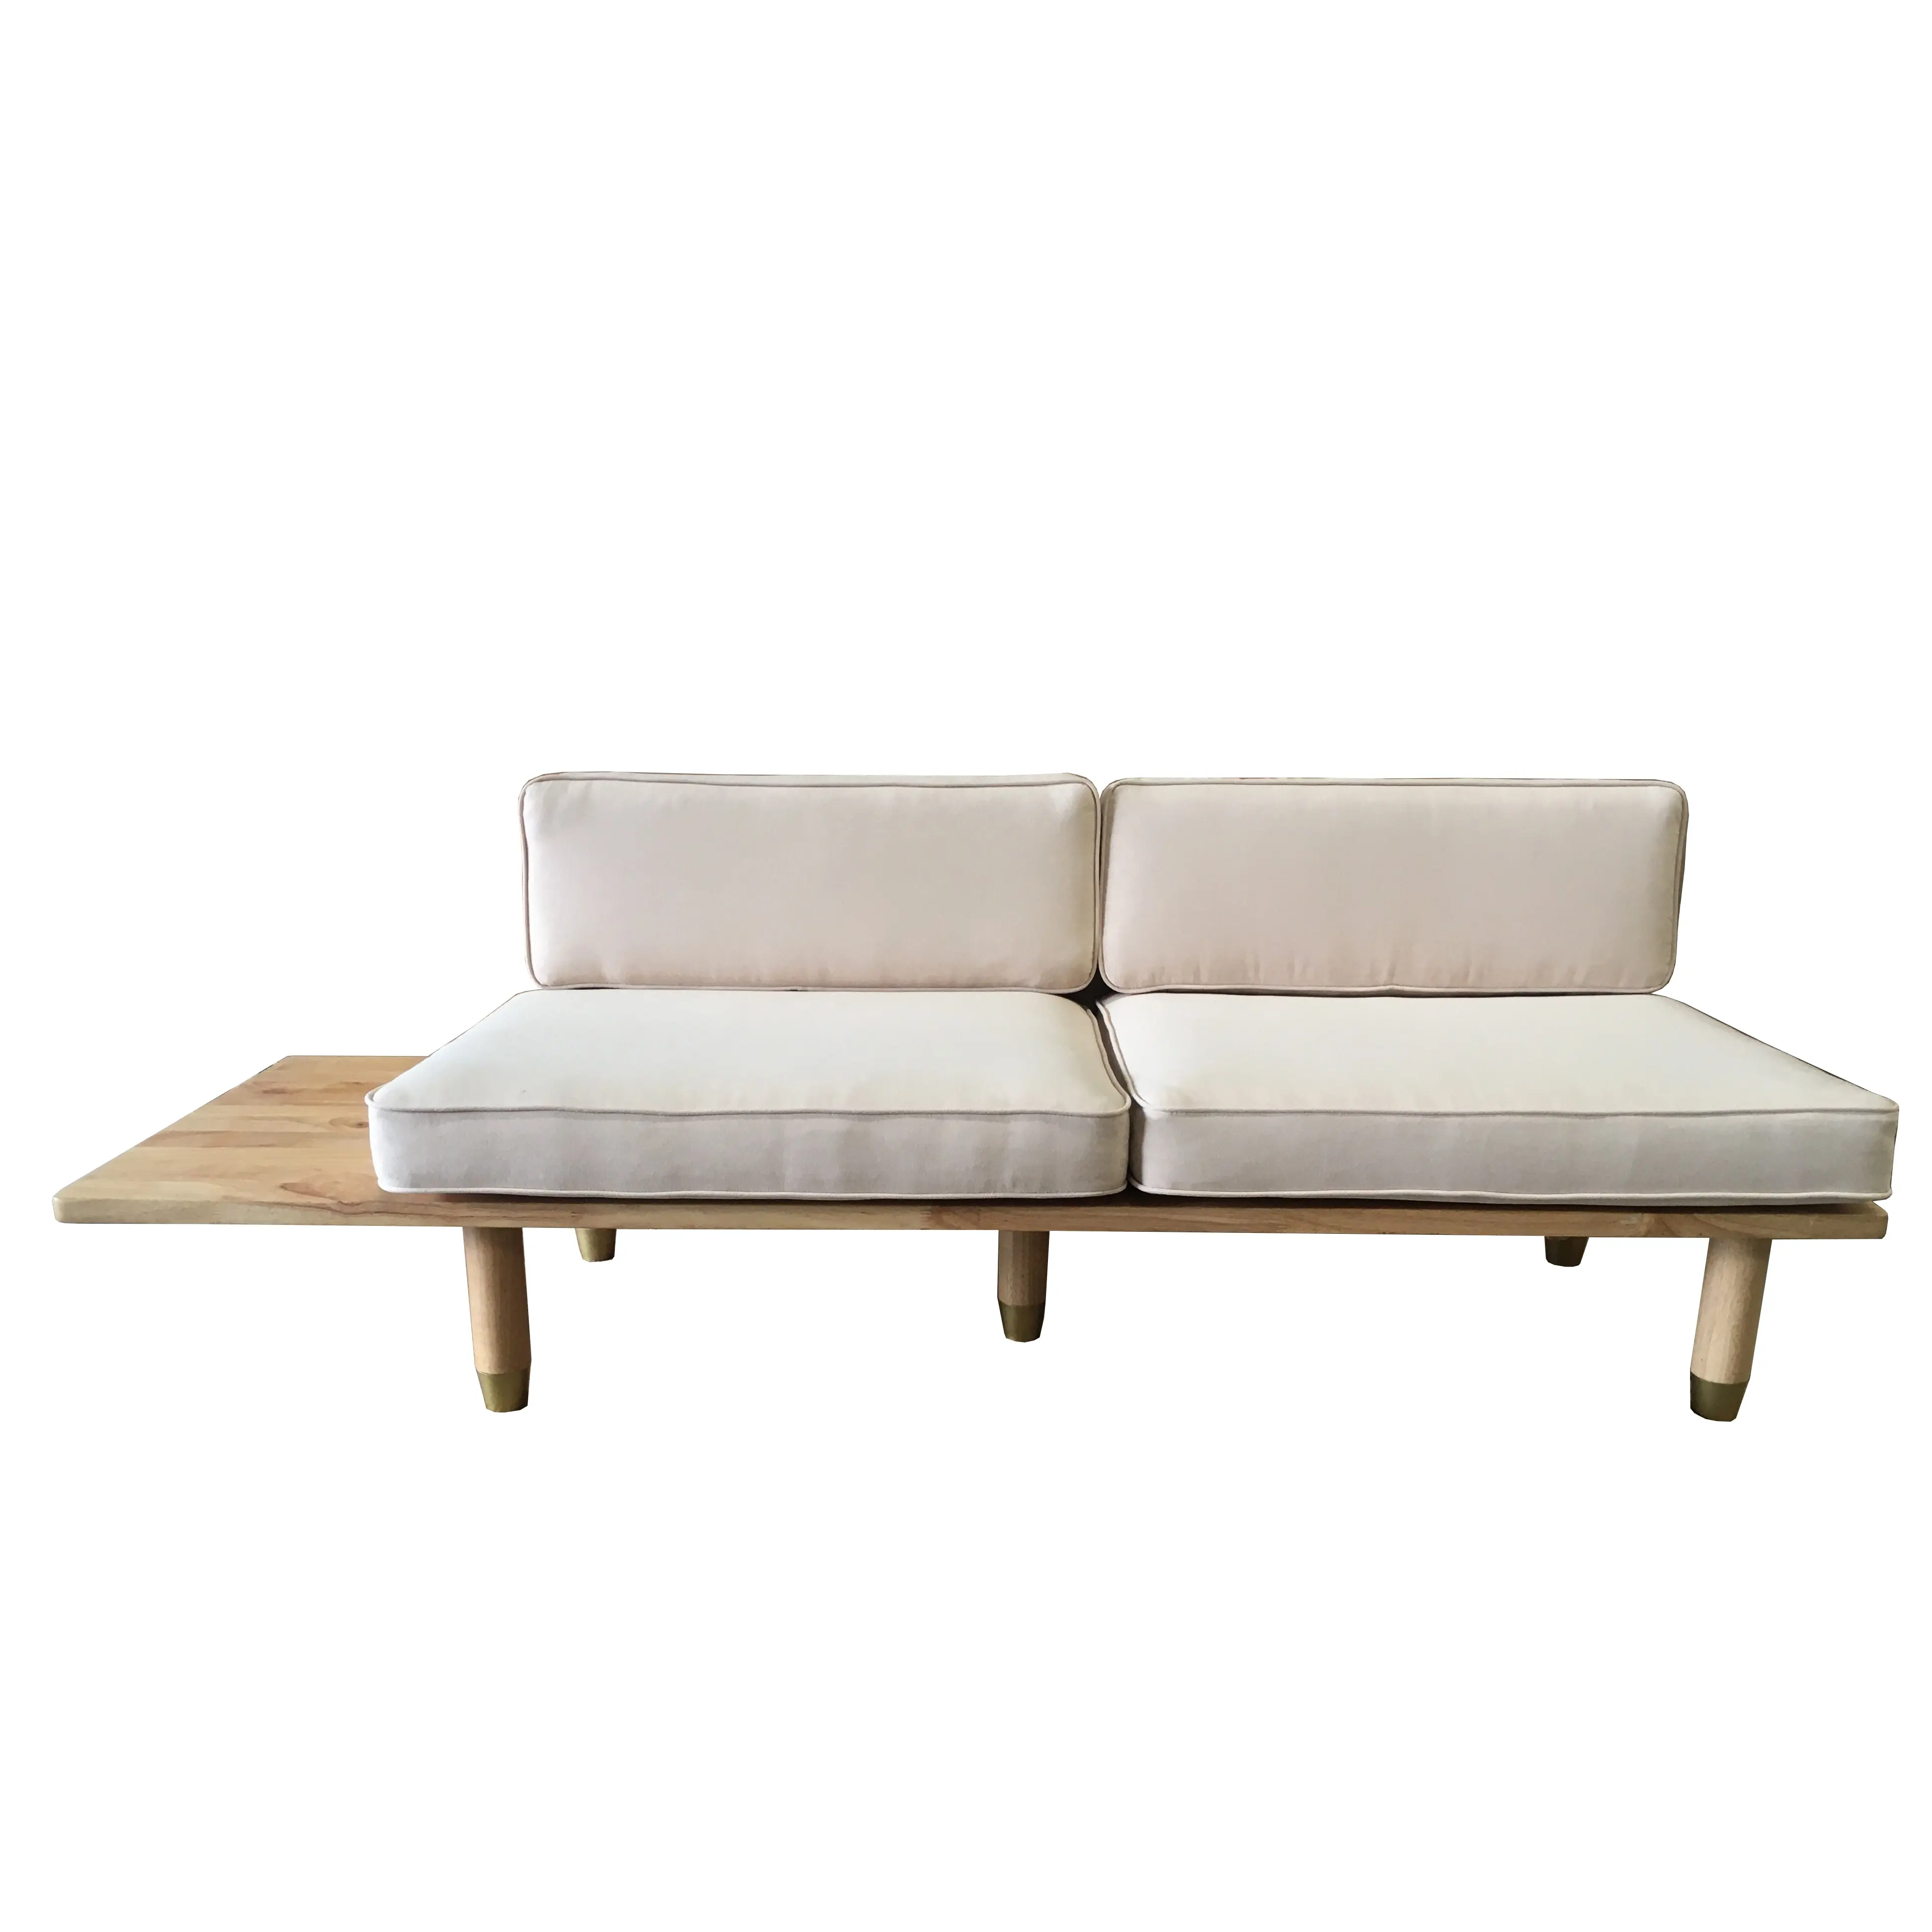 Canapé de luxe en bois de chêne massif, mobilier de salon moderne fait au VietNam, prix d'usine,